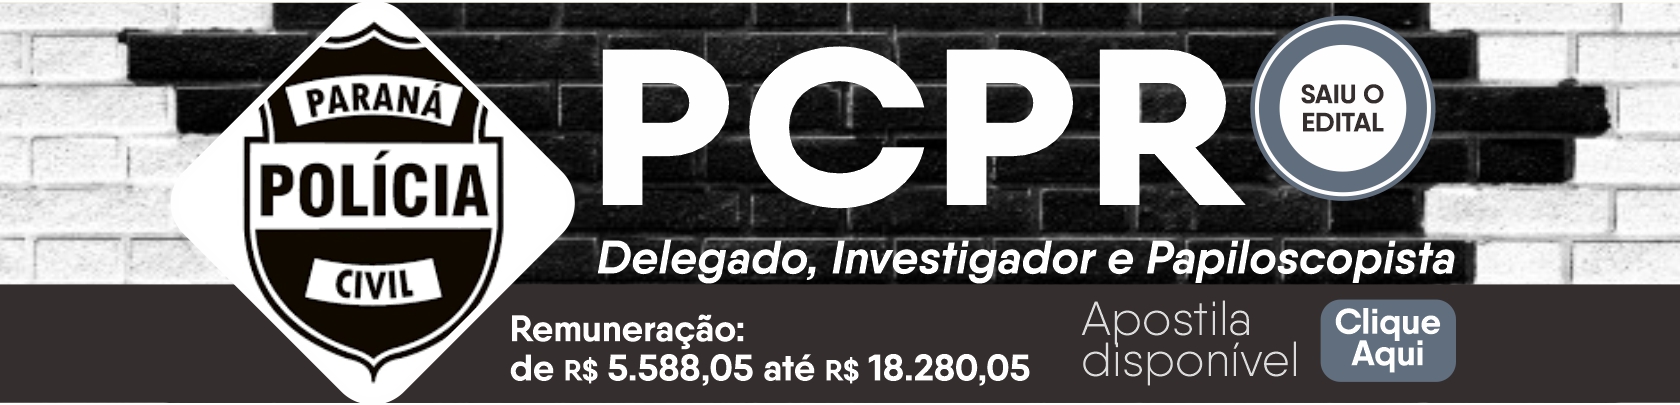 Polícia Civil do Estado do Paraná banner de divulgação